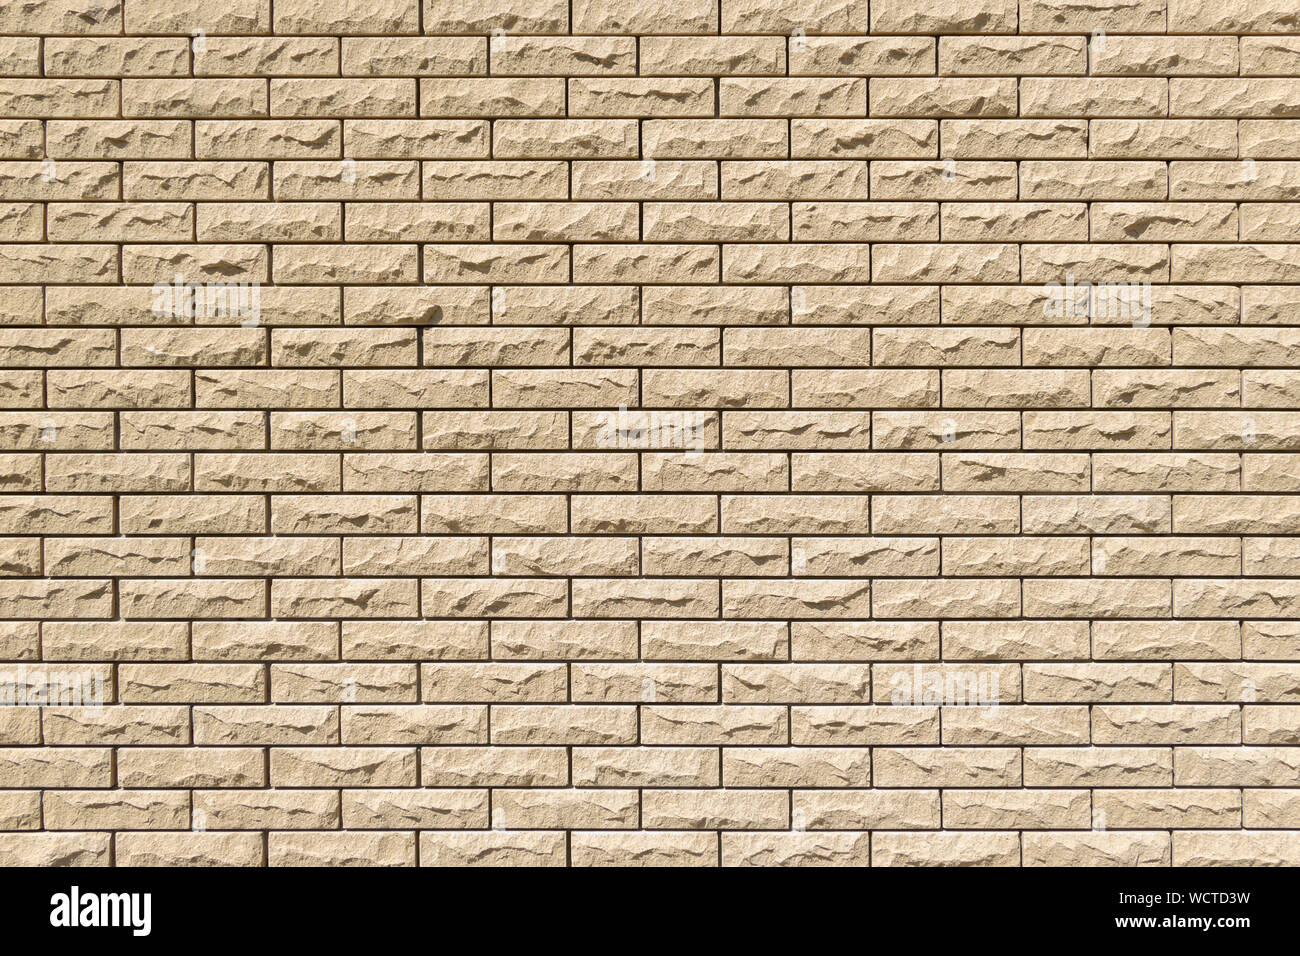 Close-up détail d'un mur en brique de sable de la texture pour l'arrière-plan. Maçonnerie horizontales. Copier l'espace. Belles briques décoratives avec rellief surface. Vertica Banque D'Images